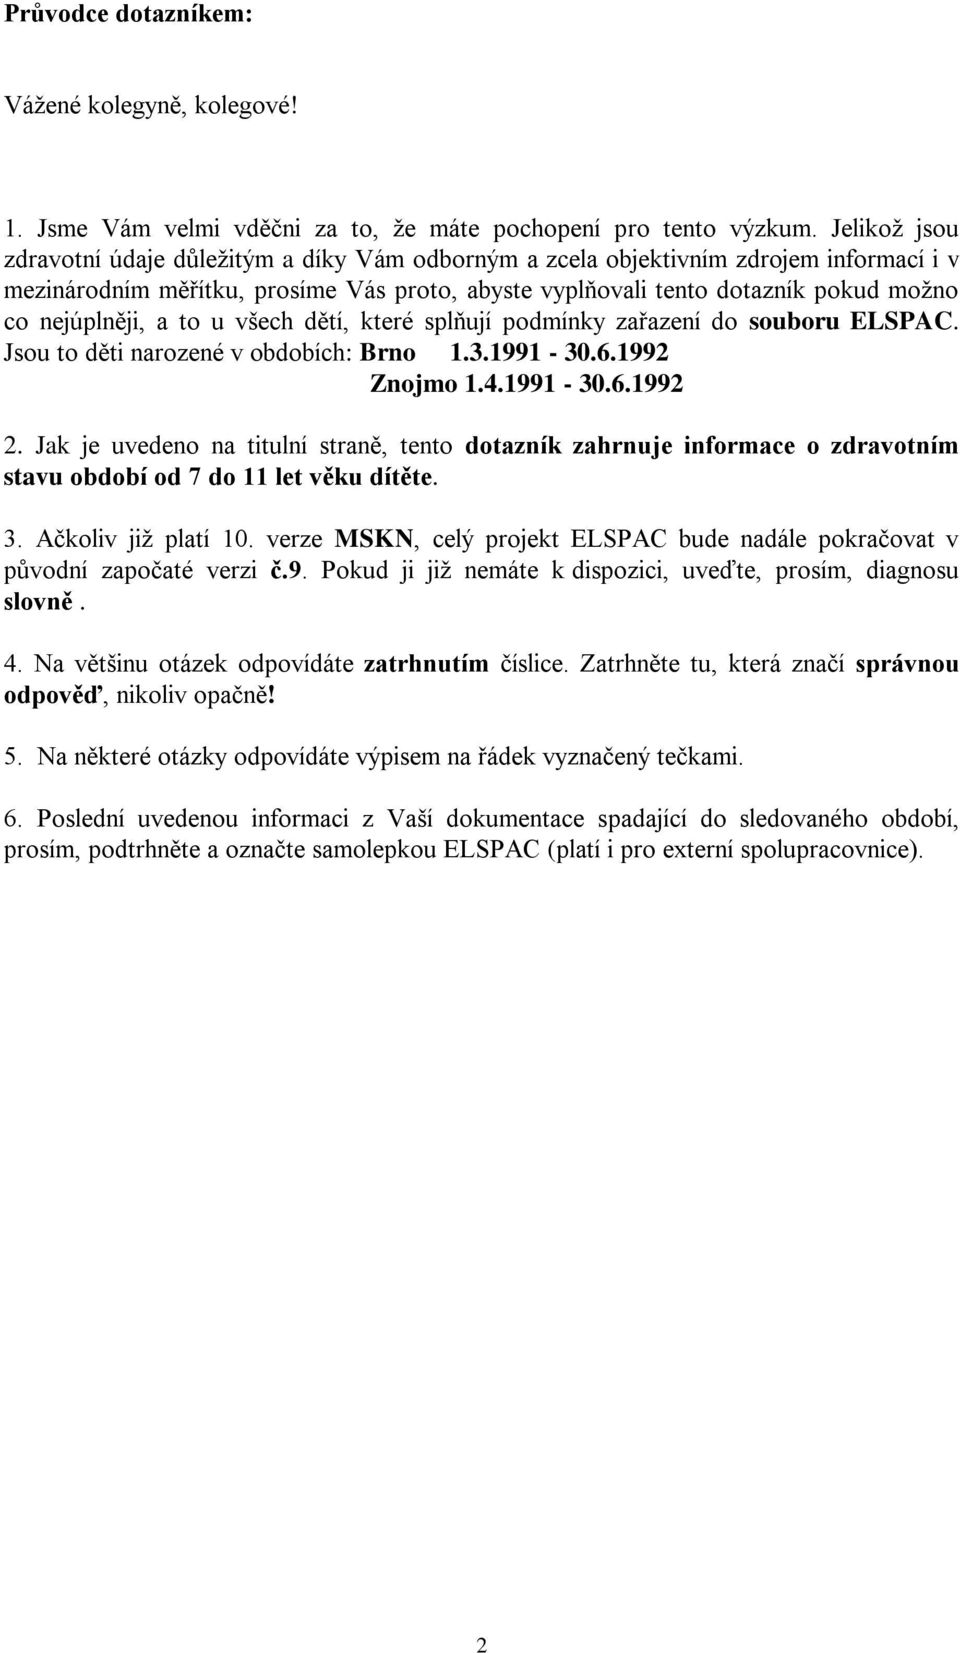 nejúplněji, a to u všech dětí, které splňují podmínky zařazení do souboru ELSPAC. Jsou to děti narozené v obdobích: Brno 1.3.1991-30.6.1992 Znojmo 1.4.1991-30.6.1992 2.